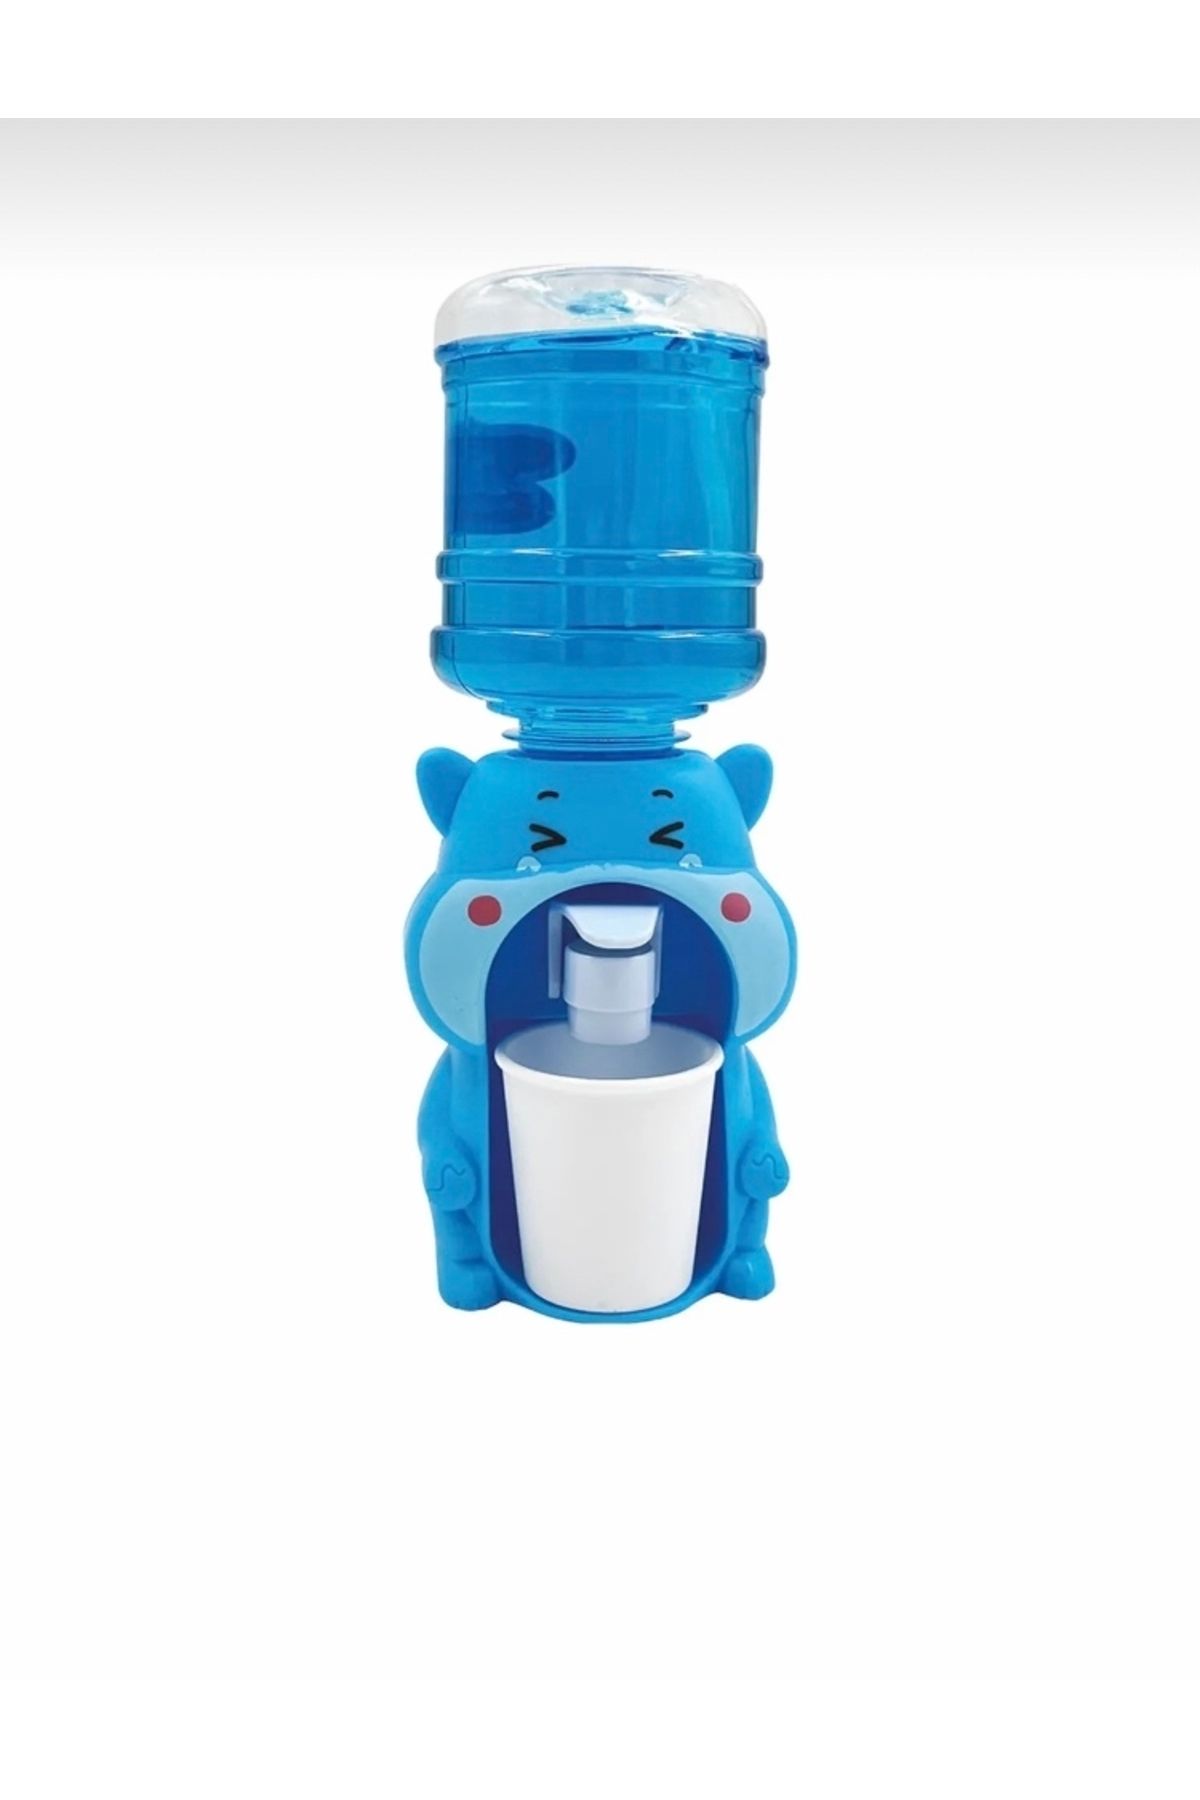 ELZEY Toy Joy - Mini Su Sebili, Çocuk Içecek Sebili, Musluk Ve Standlı, 190 ml Masaüstü